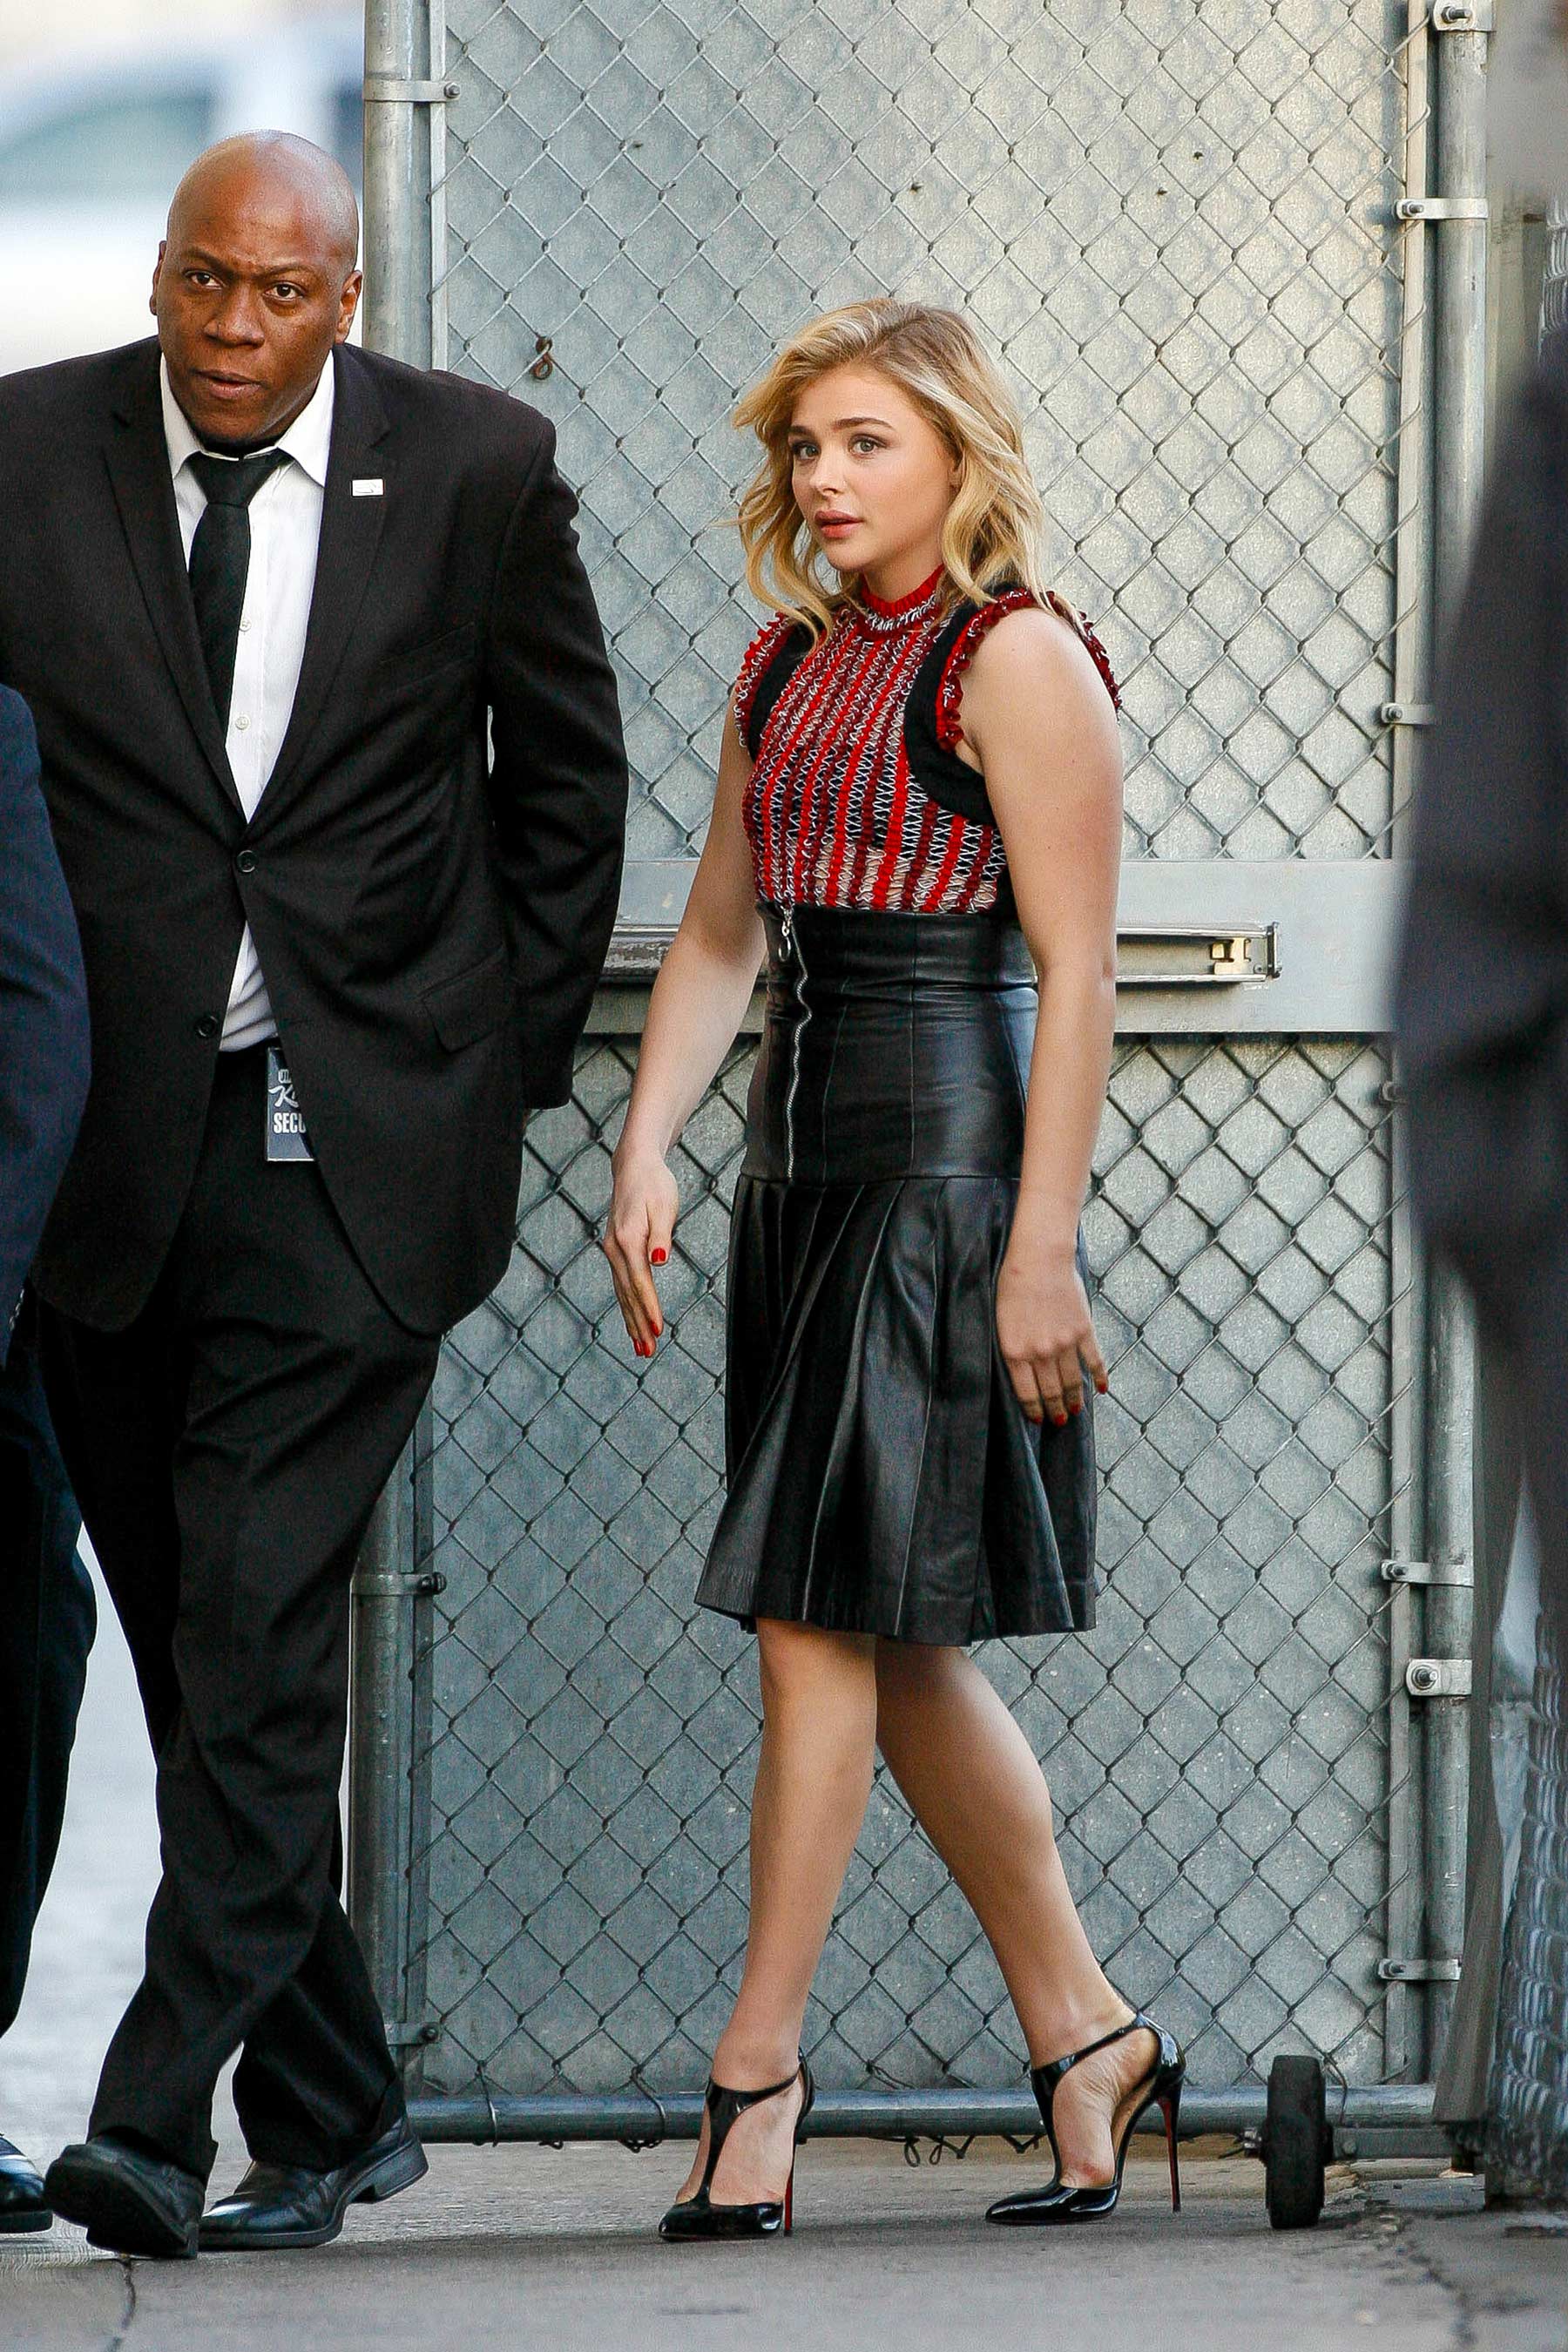 Chloe Moretz arriving to Jimmy Kimmel Live